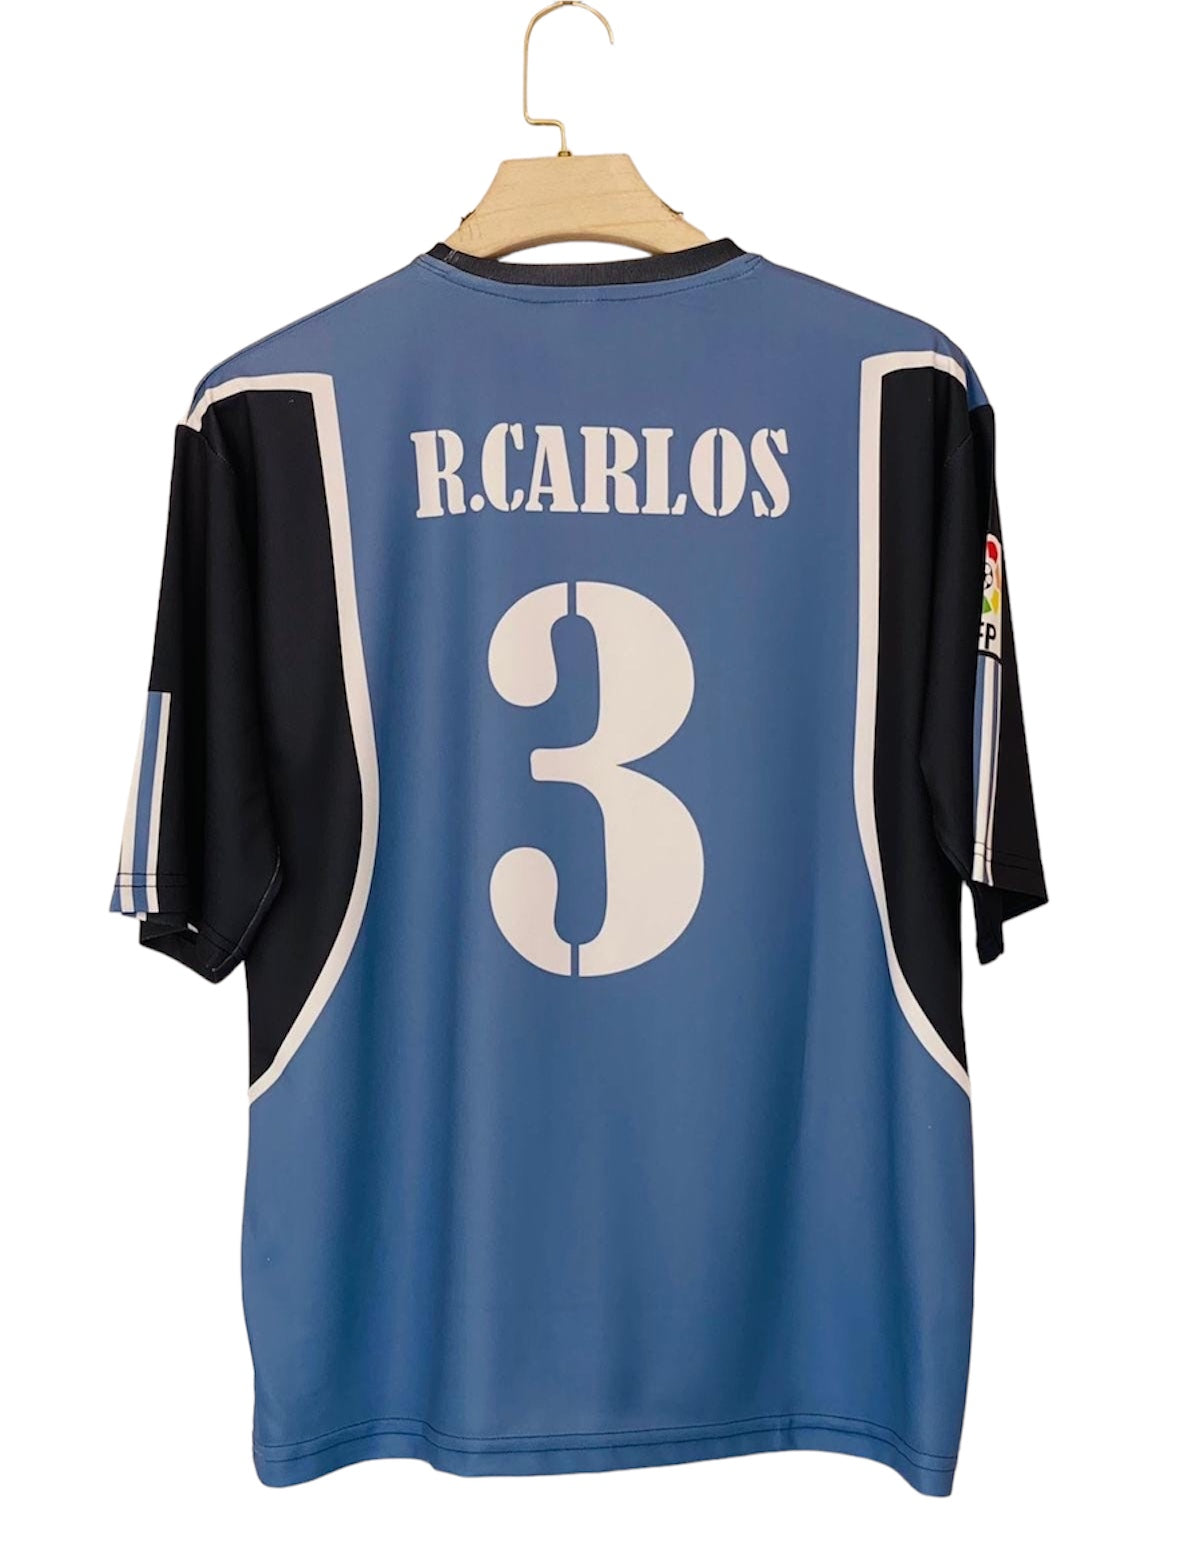 R.carlos real five sleeve